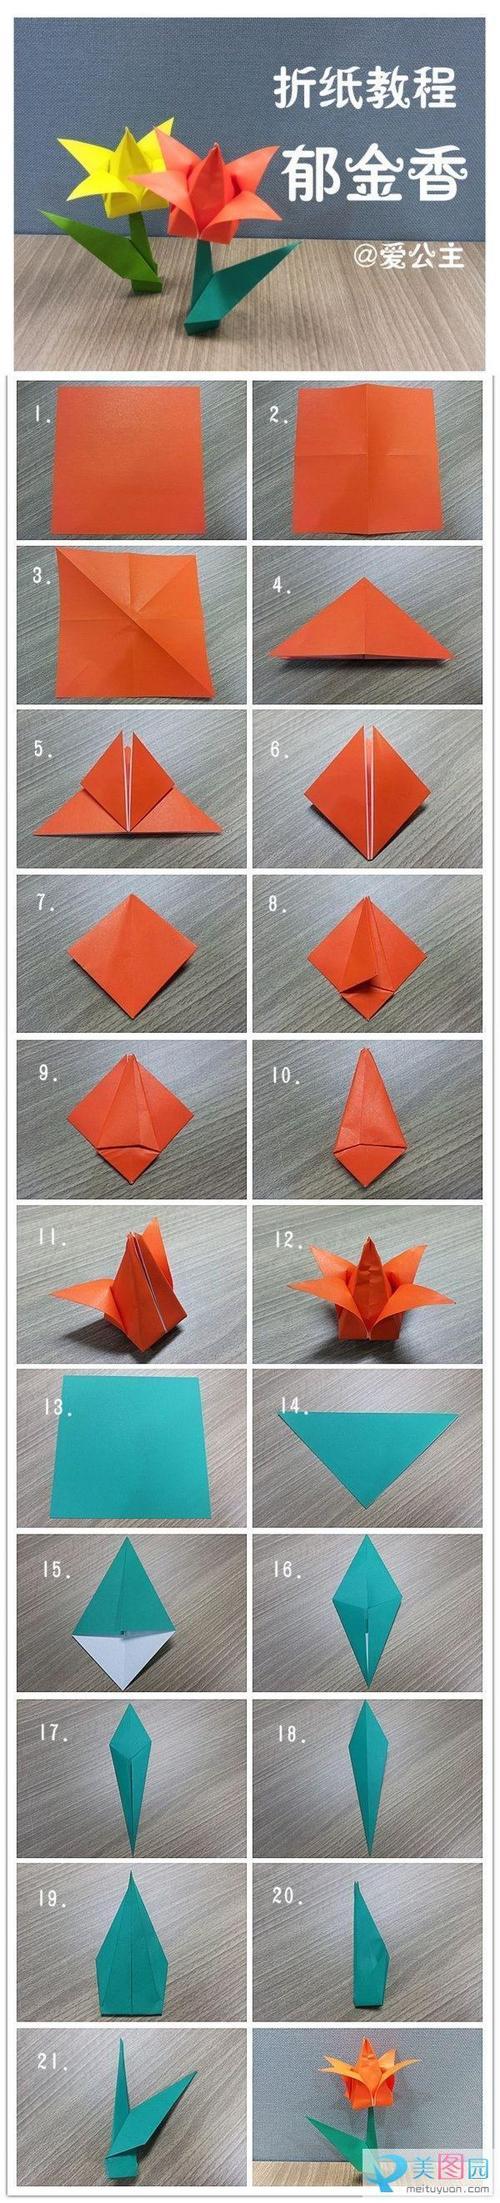 手机支架的折纸教程实用折纸折纸教程   晒晒纸艺网